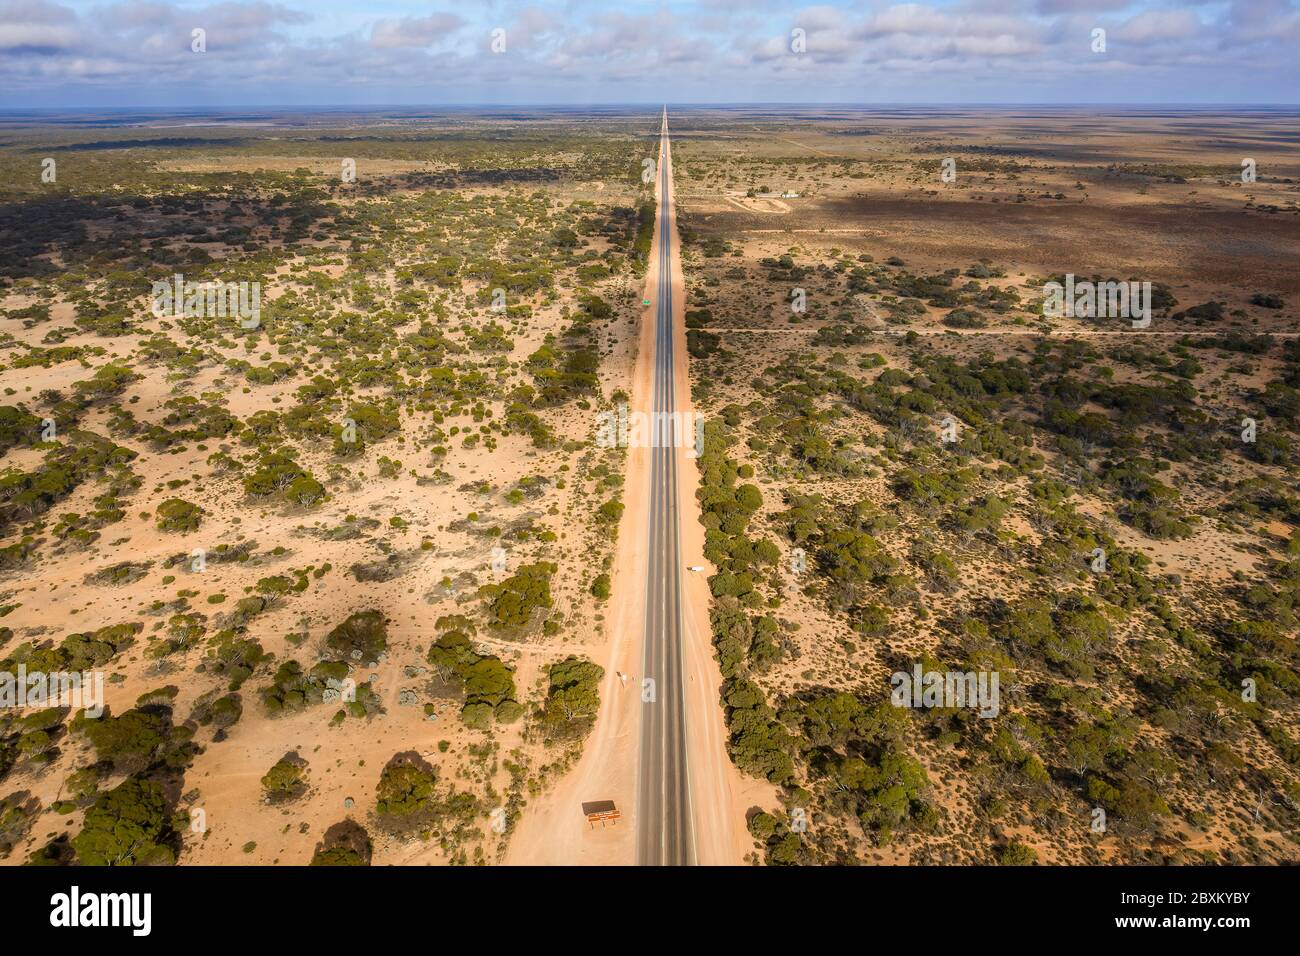 Luftaufnahme des Startens der 90 Meilen geraden Straße, die Australiens längste gerade Straße ist und sich auf der Nullarbor Plain befindet Stockfoto